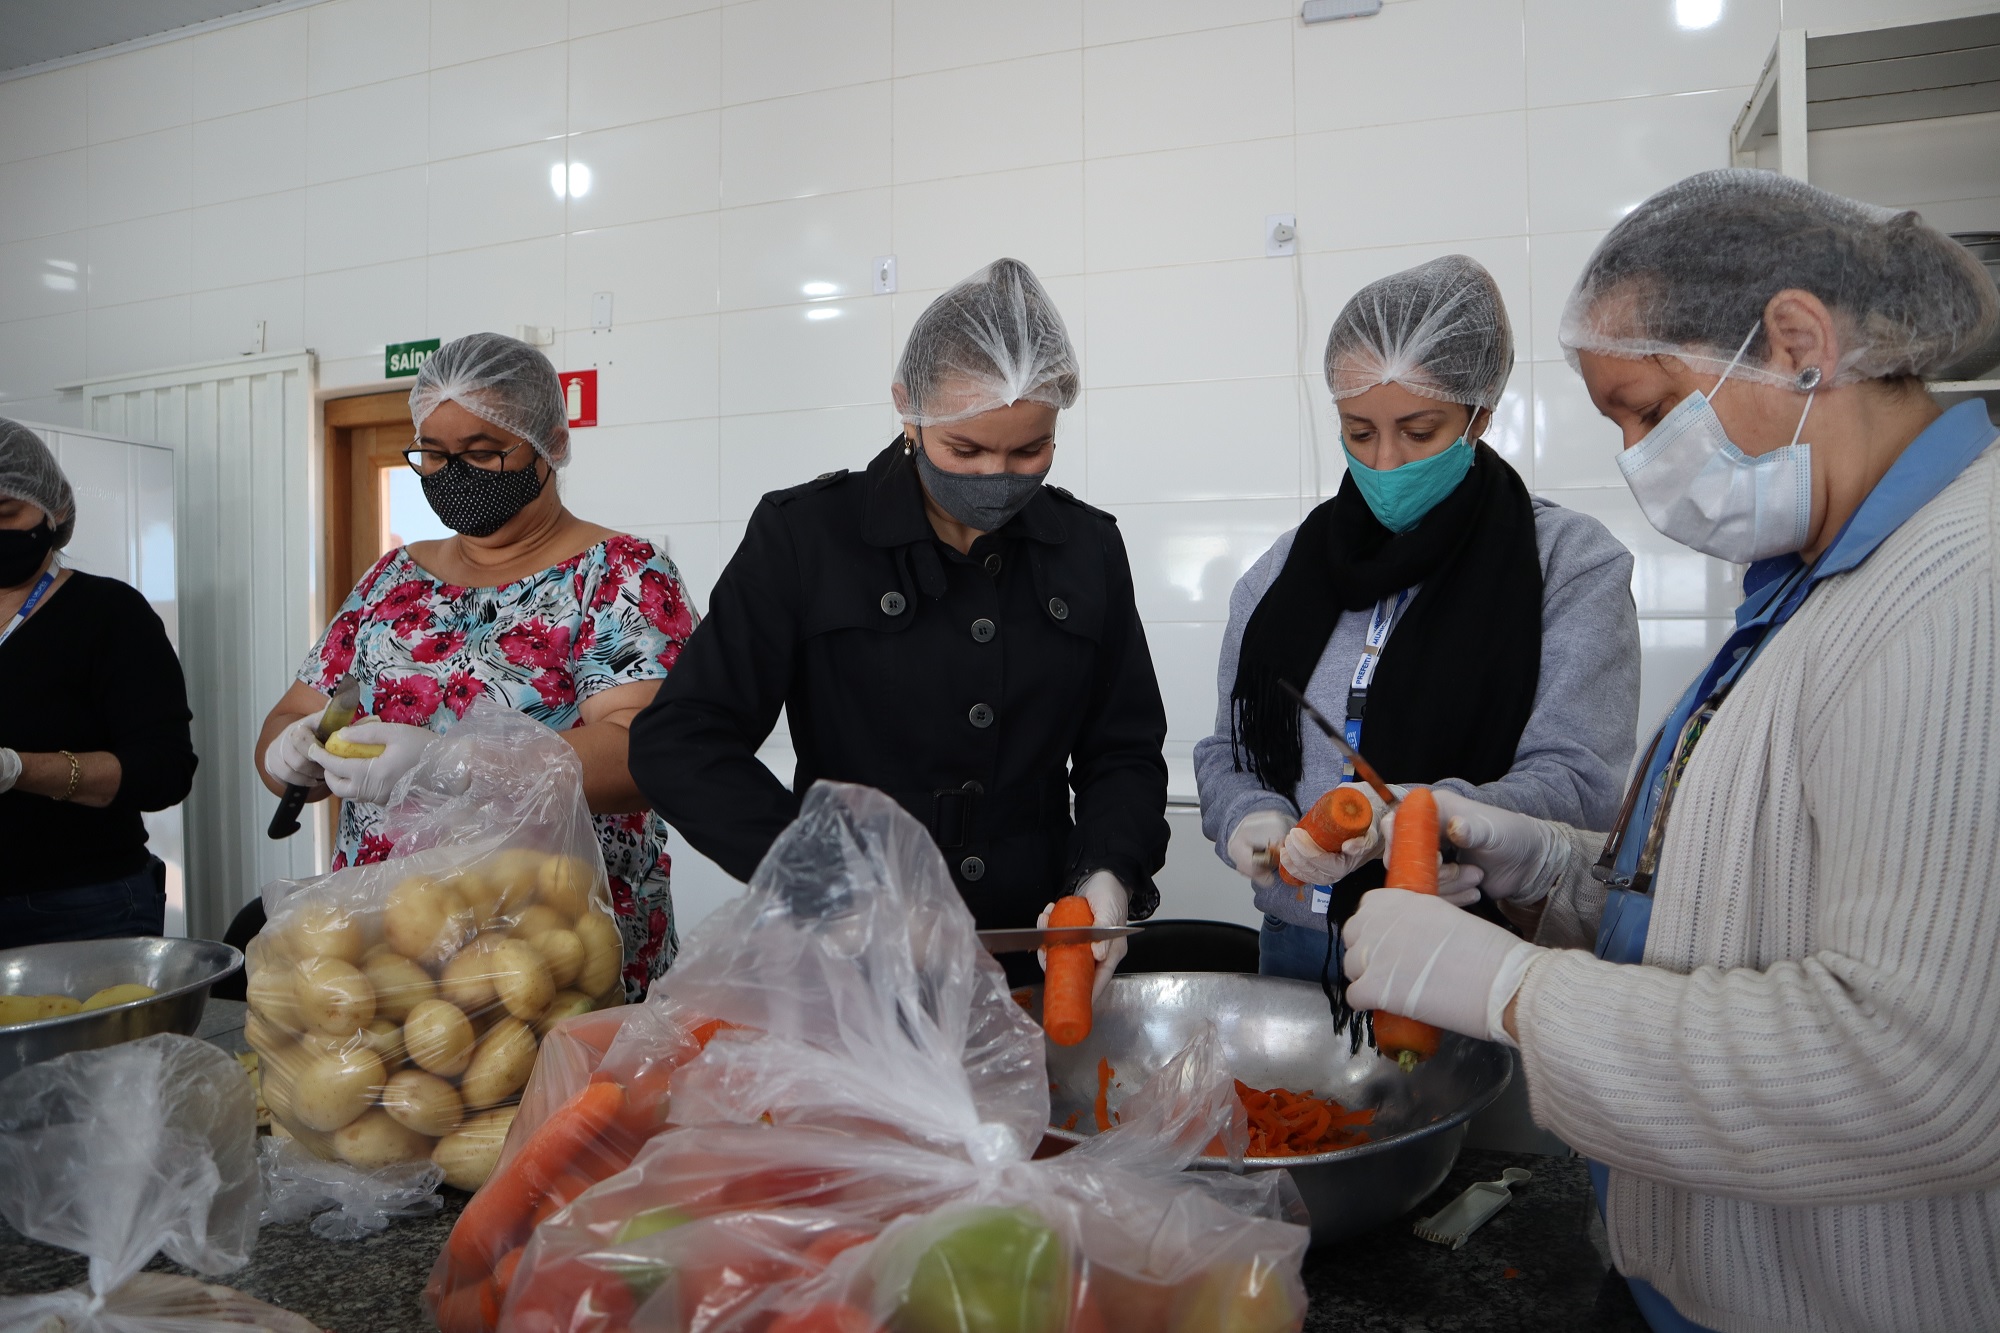 Funcionários da Secretaria de Desenvolvimento Social preparam alimentos para entrega nesta sexta-feira (30). Foto: Luís Fernando da Silva / Prefeitura Municipal de Urupês.